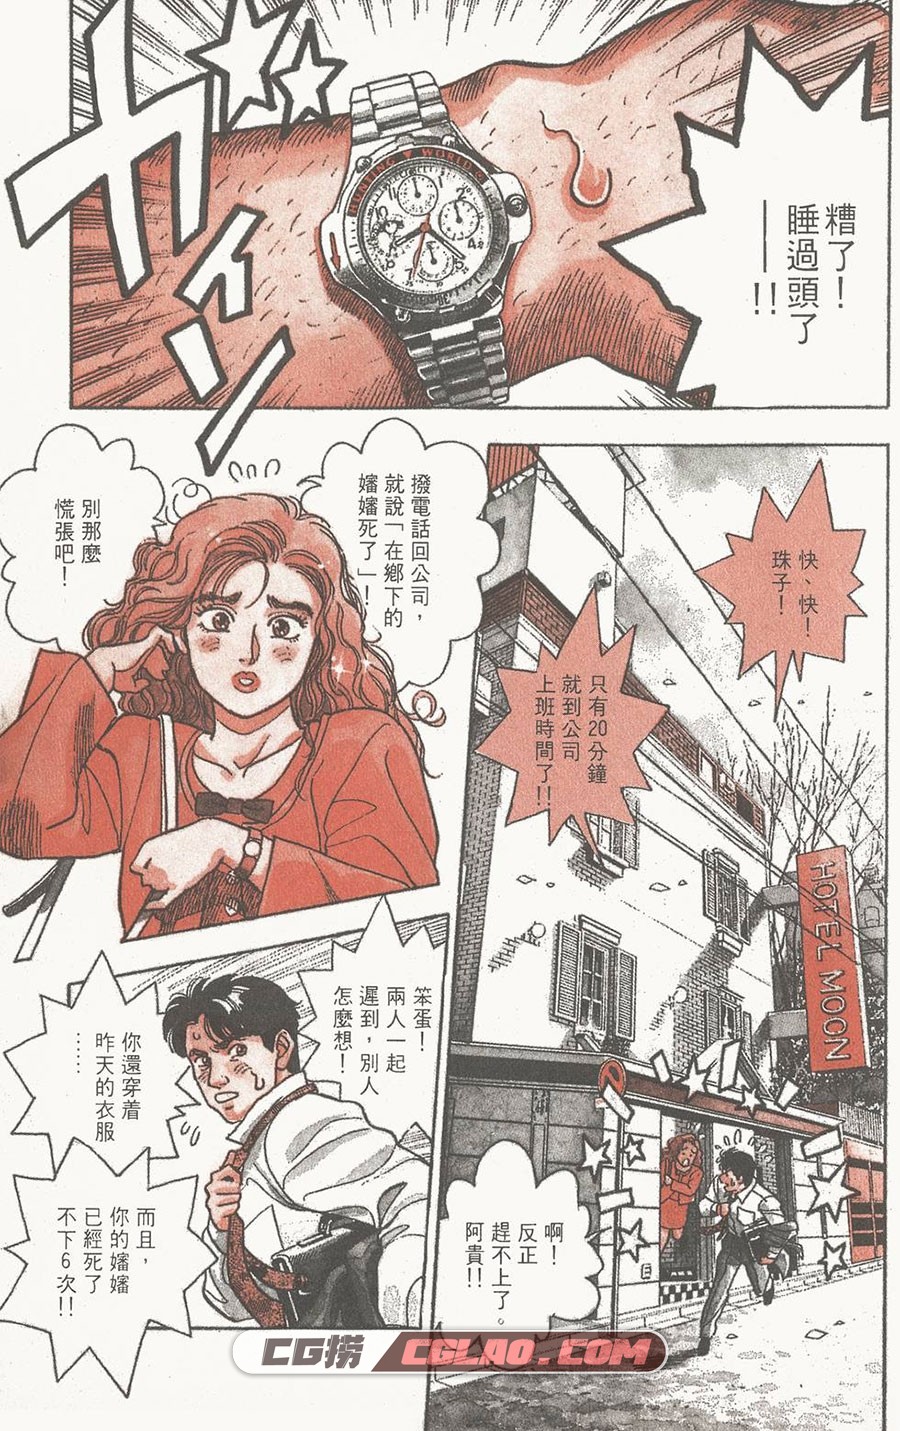 企业战士 富泽顺 1-12卷 漫画完结全集下载 百度网盘,0006.jpg